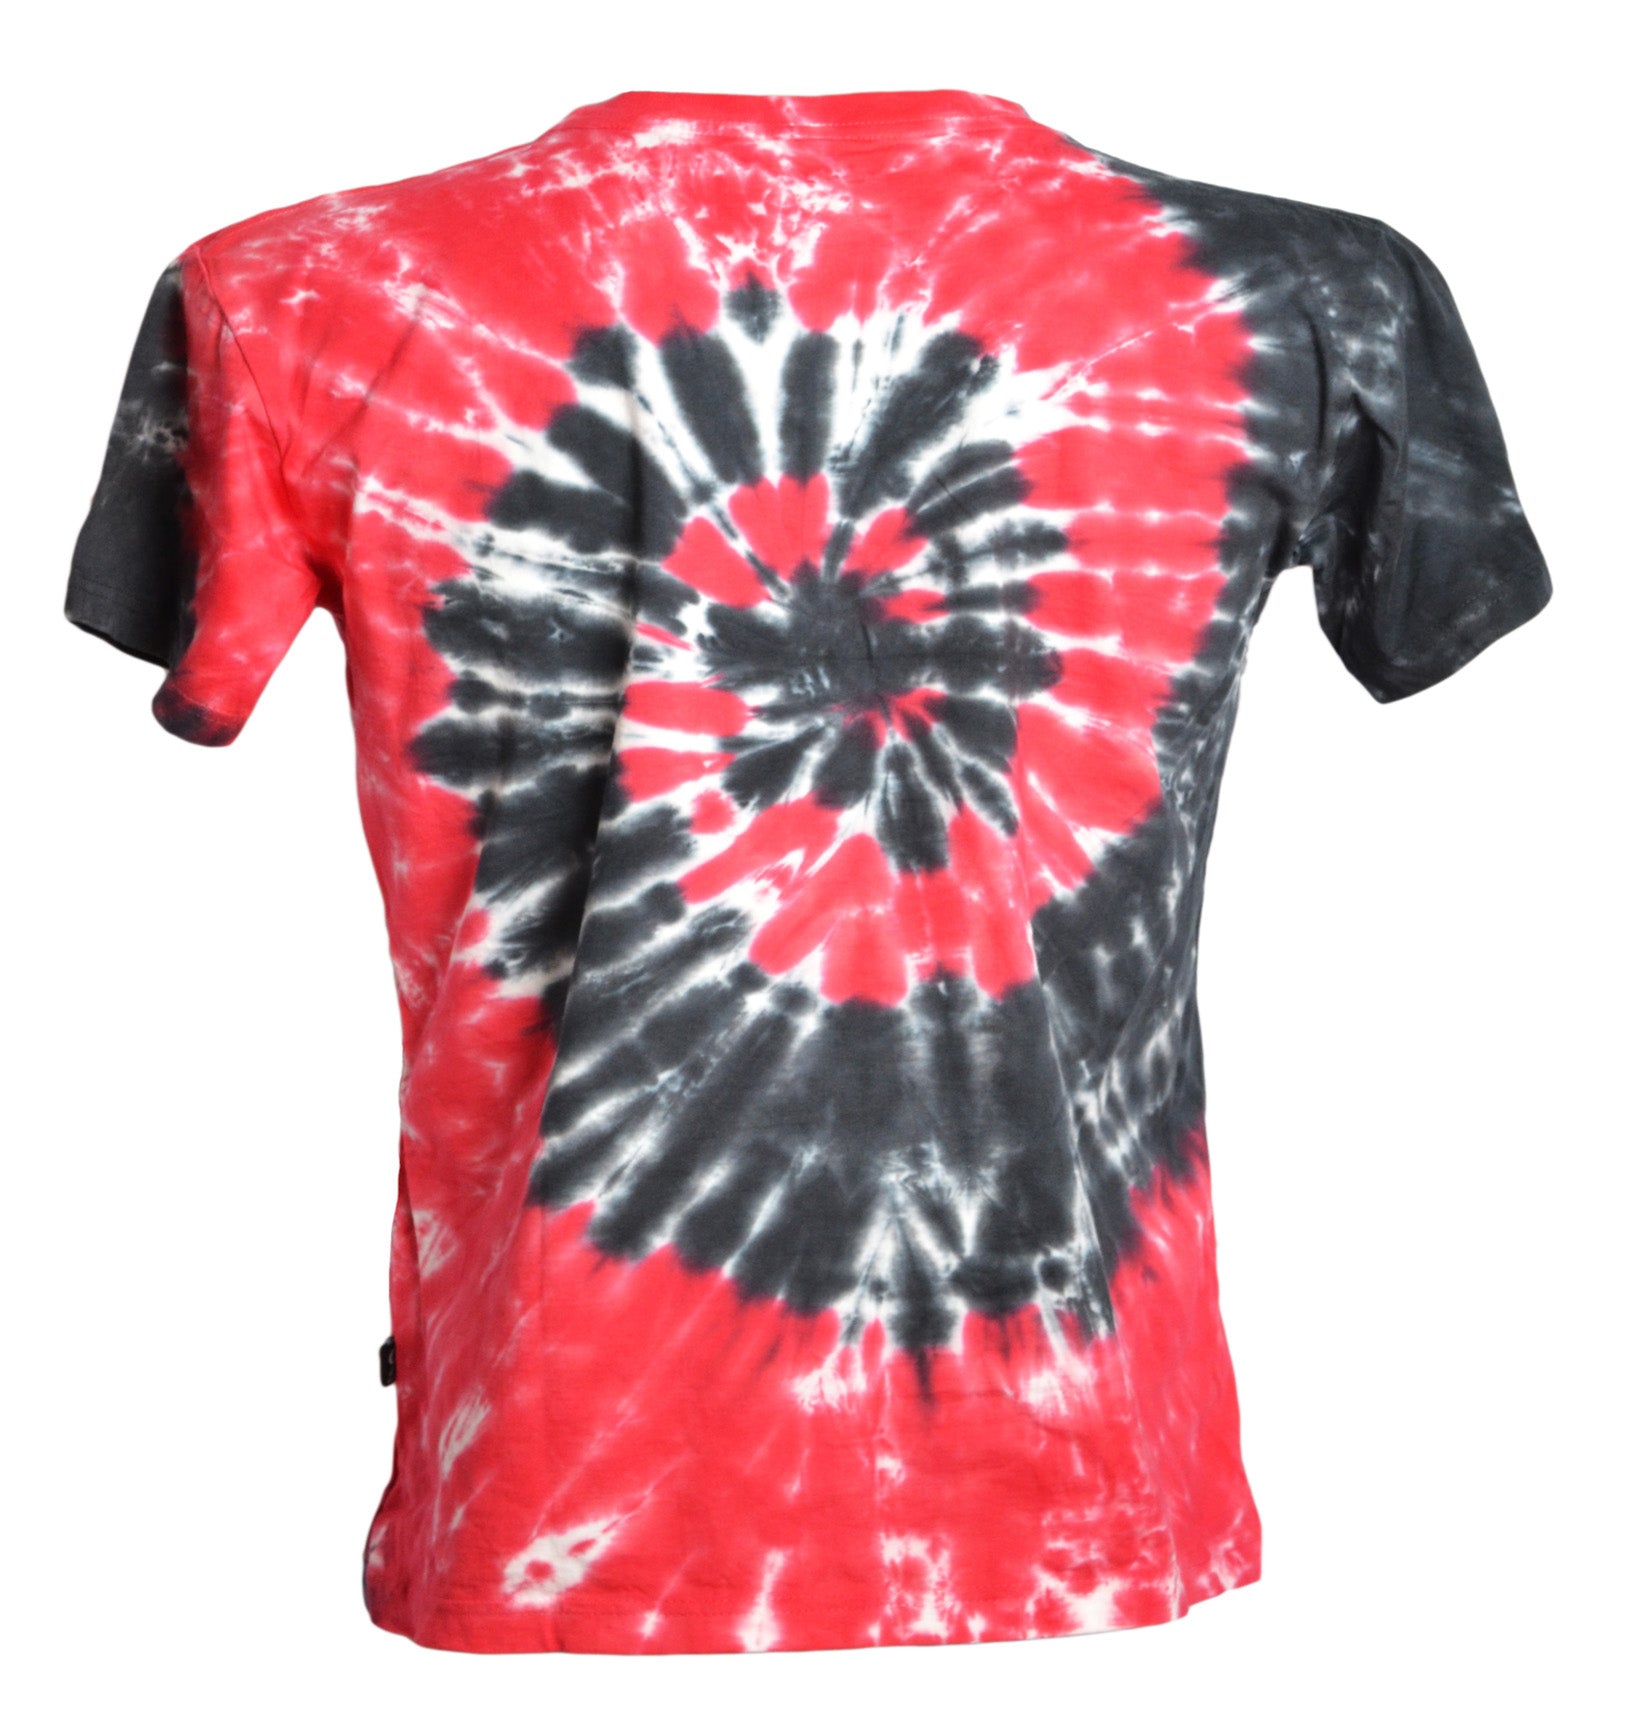 Vue dos t-shirt tie and dye effet spirale rouge, noir et blanc - GL BOUTIK